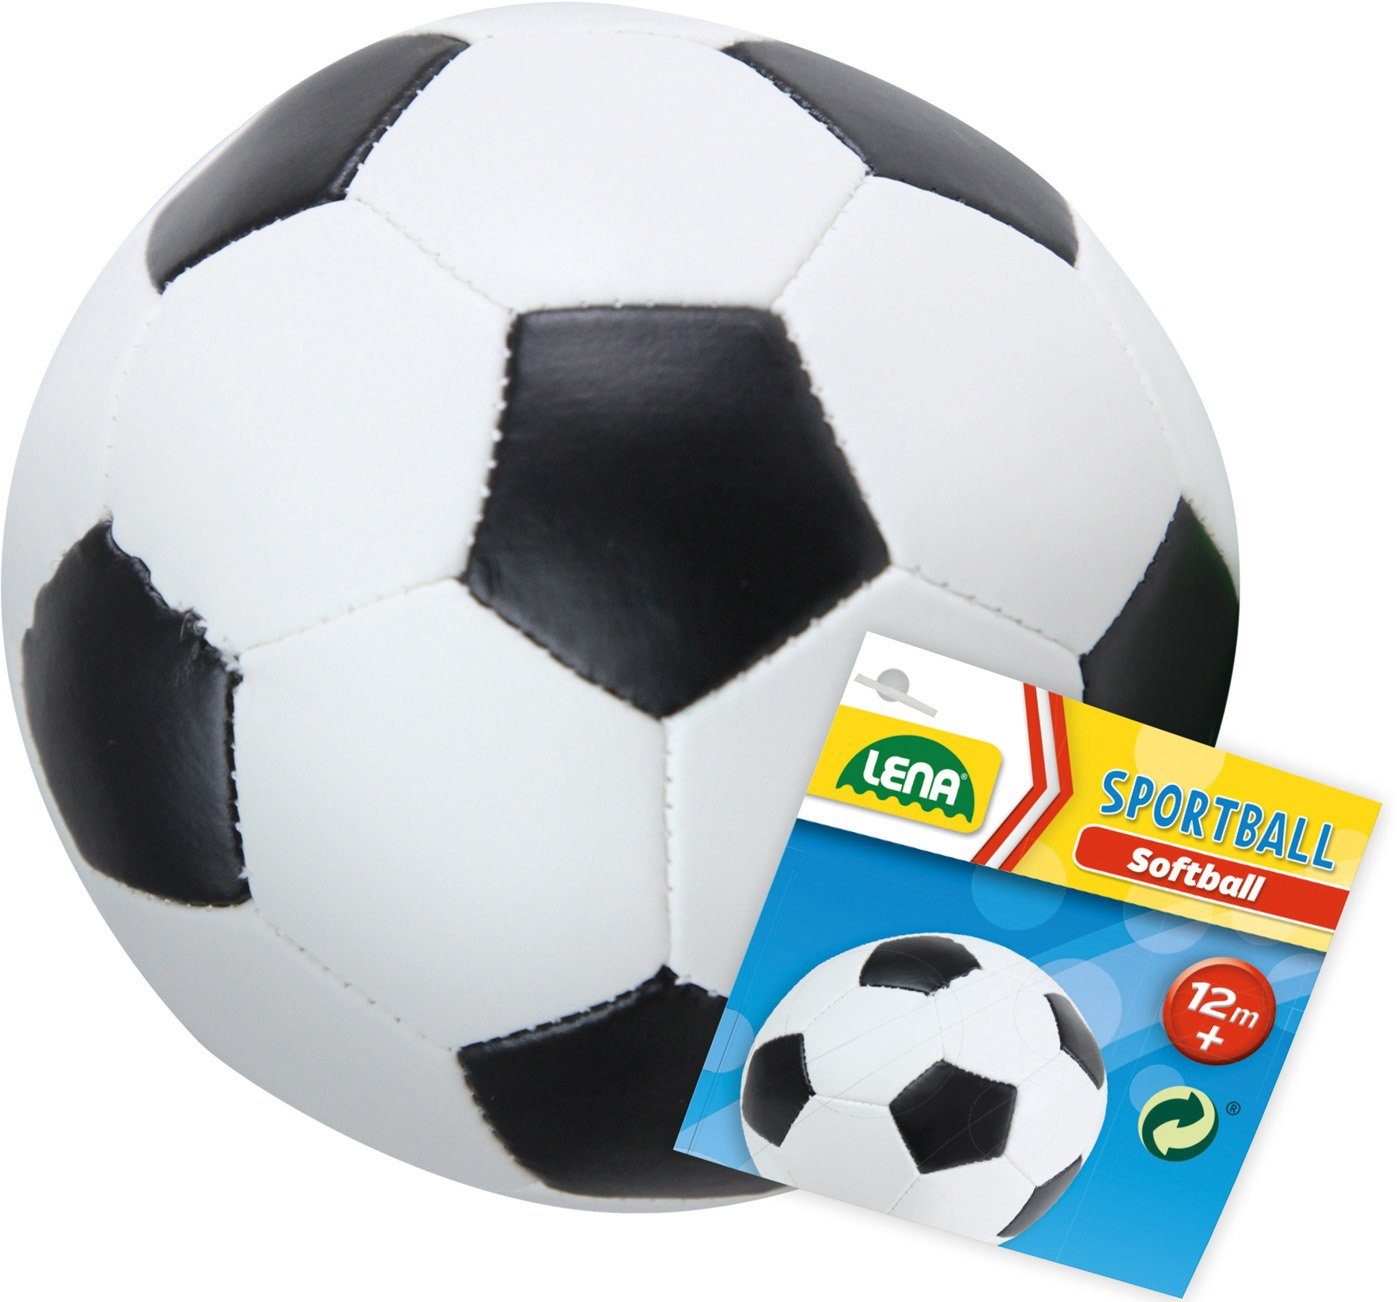 Soft-Fußball Europe schwarz/weiß, 18 Softball Made in cm, Lena®